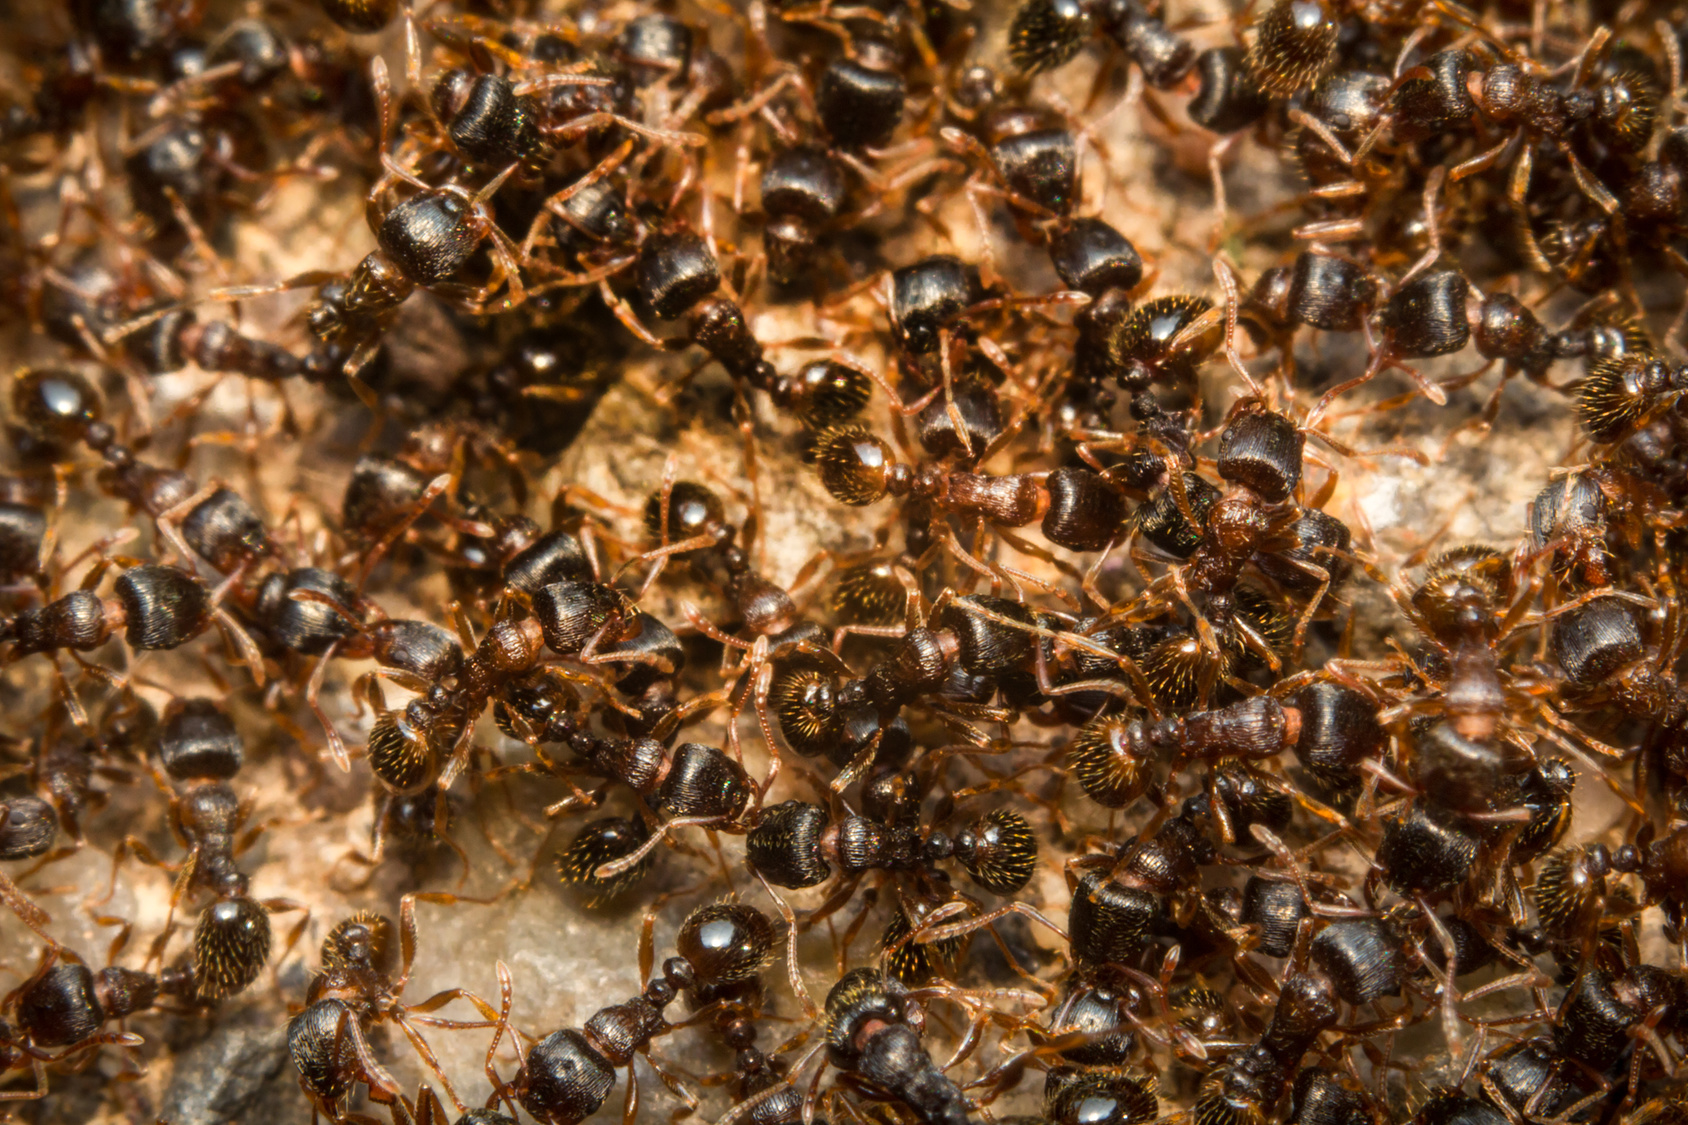 Les fourmis peuvent être opportunistes et s'adapter à leur environnement. Pour la nourriture aussi. © Ezume Images, Fotolia